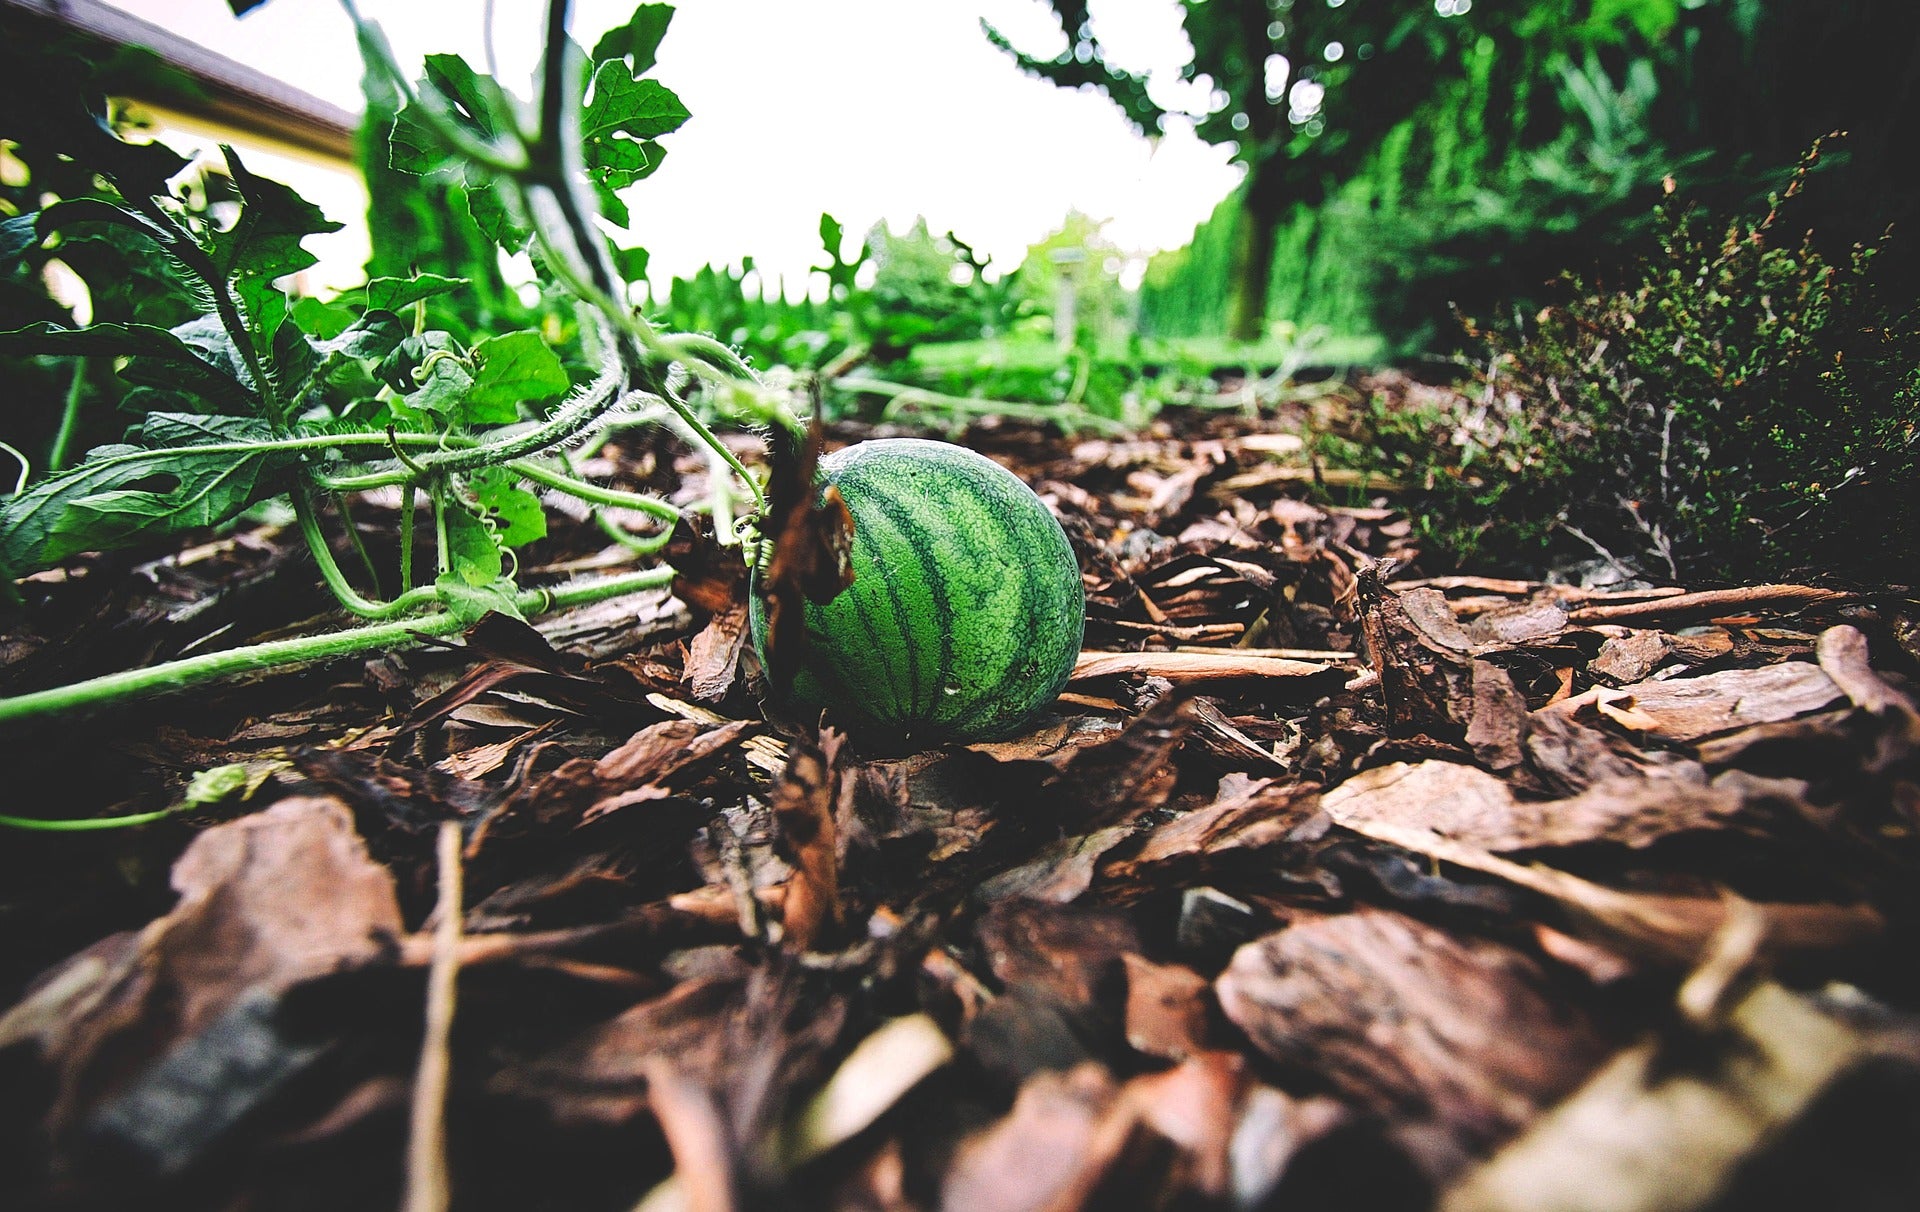 Watermelon (mini / personal size)